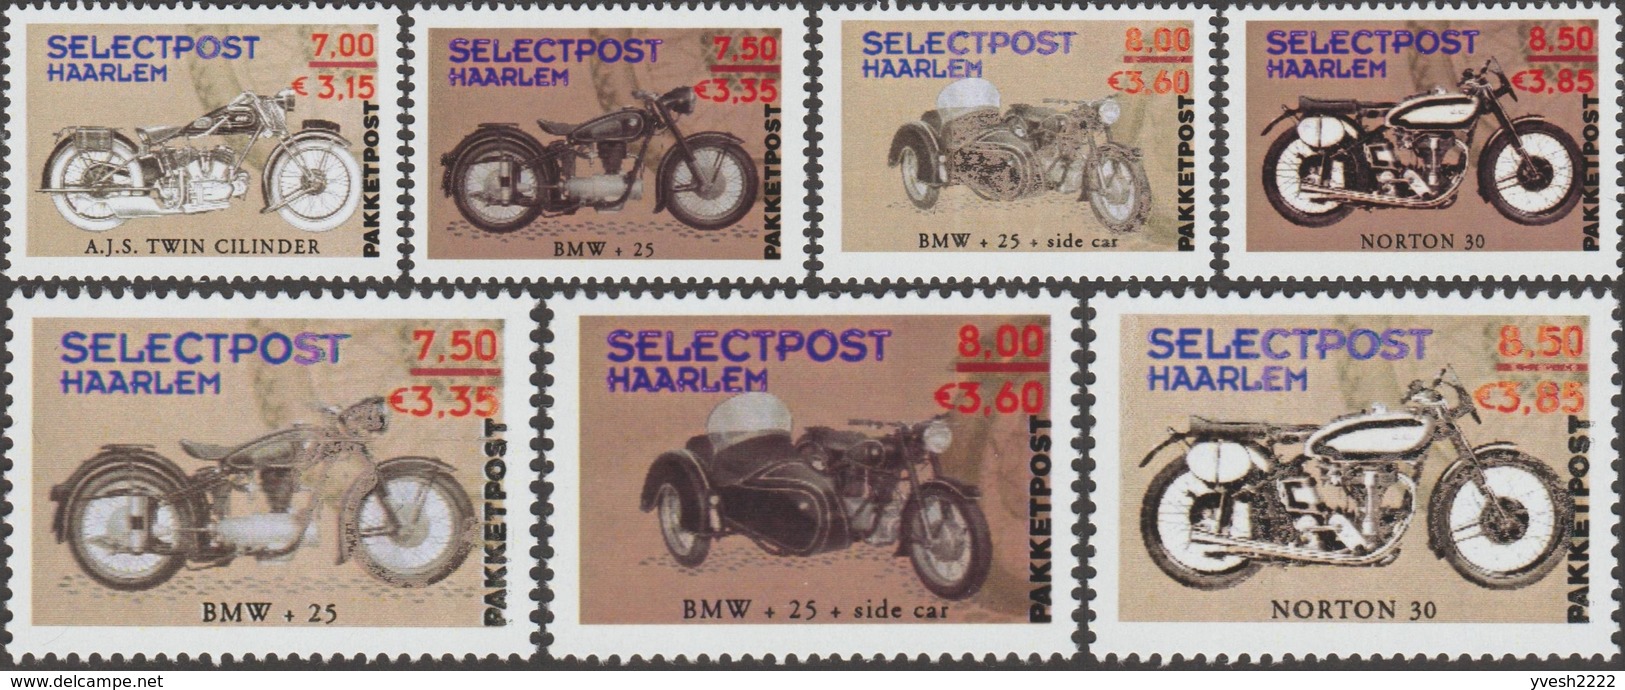 Pays-Bas 2001. Poste Privée Selectpost. Envois De Paquets à Haarlem. Motos Twin Cylinder, BMW Et Norton - Motorbikes